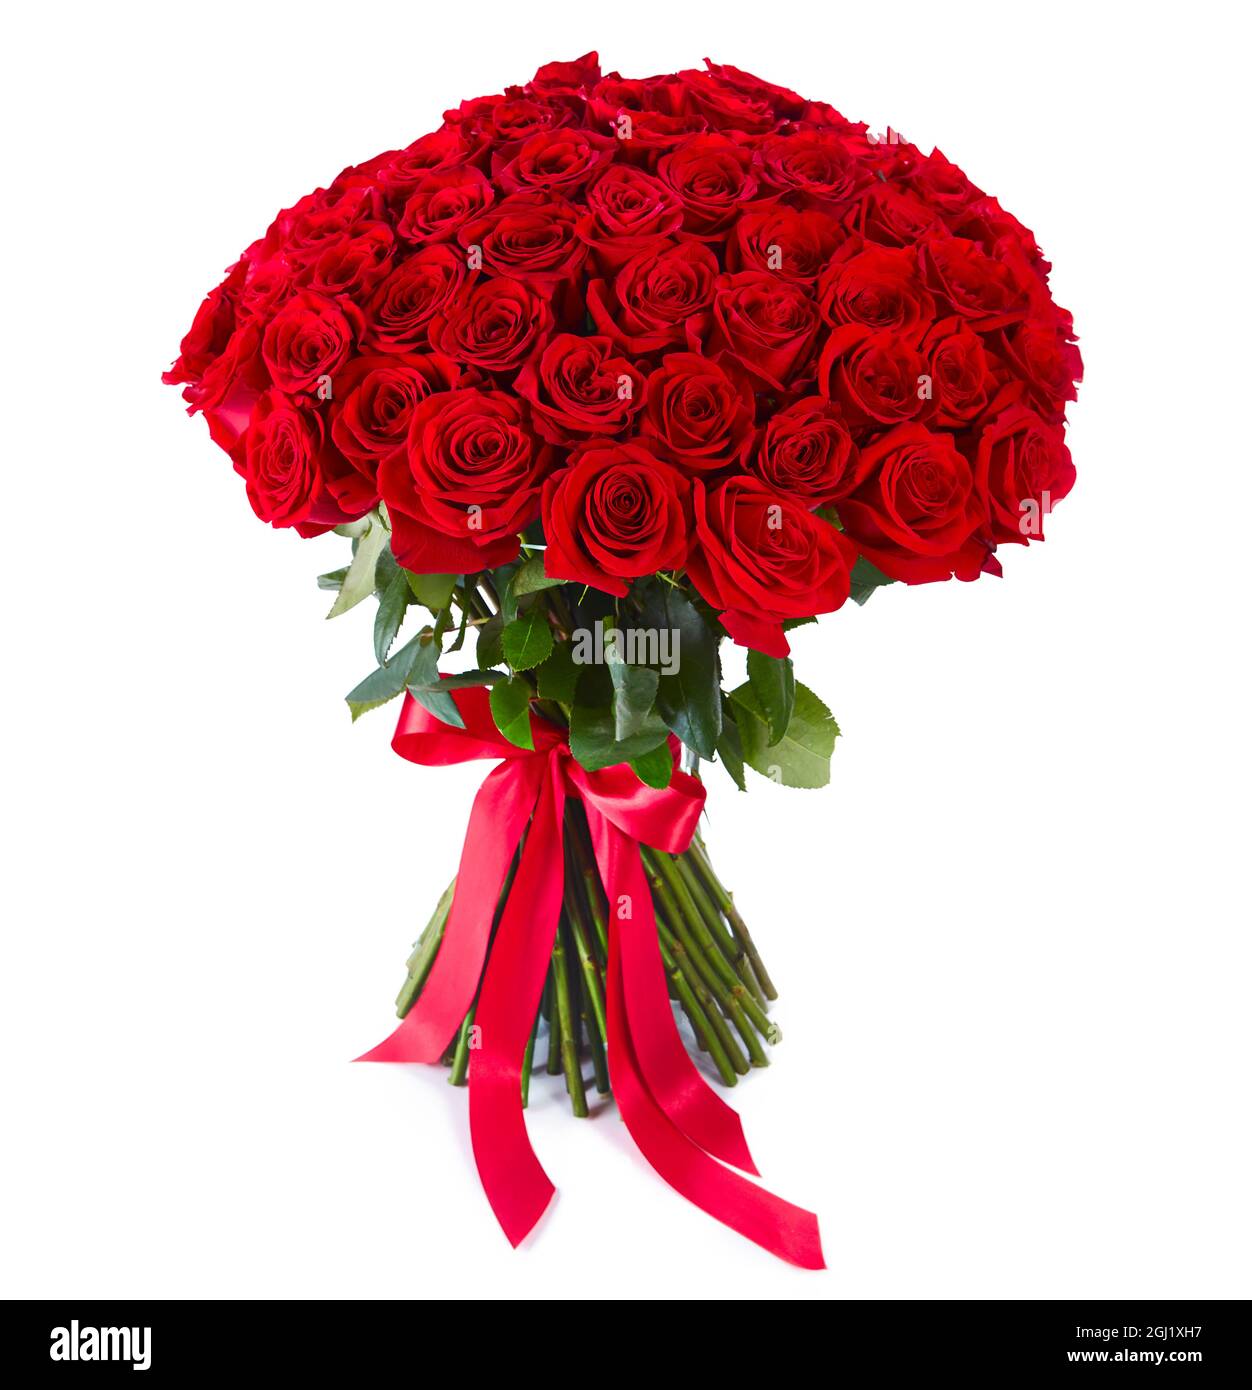 Riesige rote Rosen Bouquet isoliert auf weißem Hintergrund. Luxus Bouquet  von hundert dunklen rubinroten Rosen für Valentinstag. Feier der Verlobung  oder wir Stockfotografie - Alamy